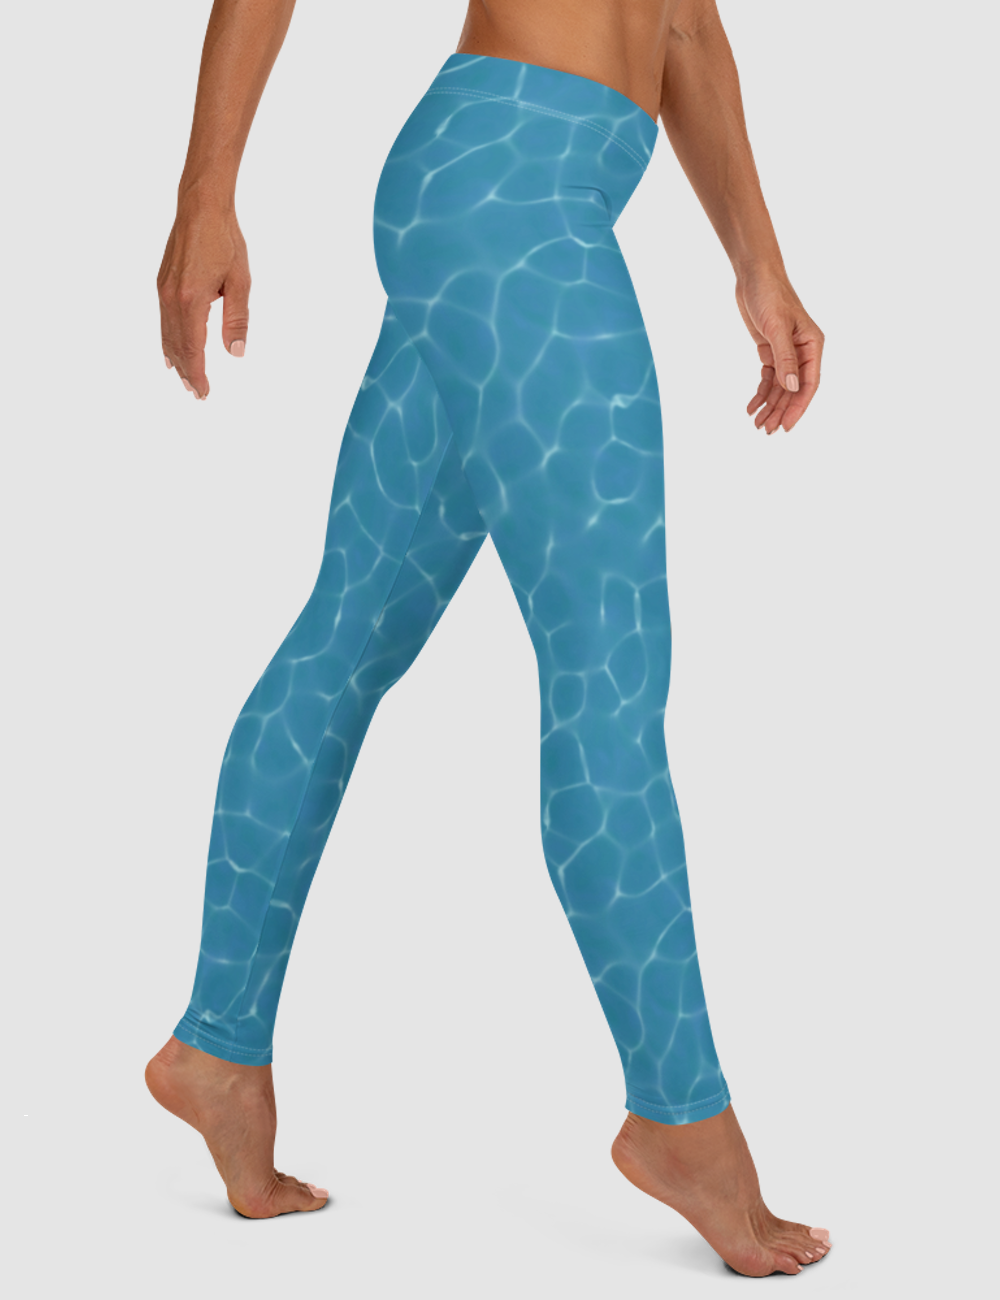 Natural Blue Water | Women's Standard Yoga Leggings OniTakai